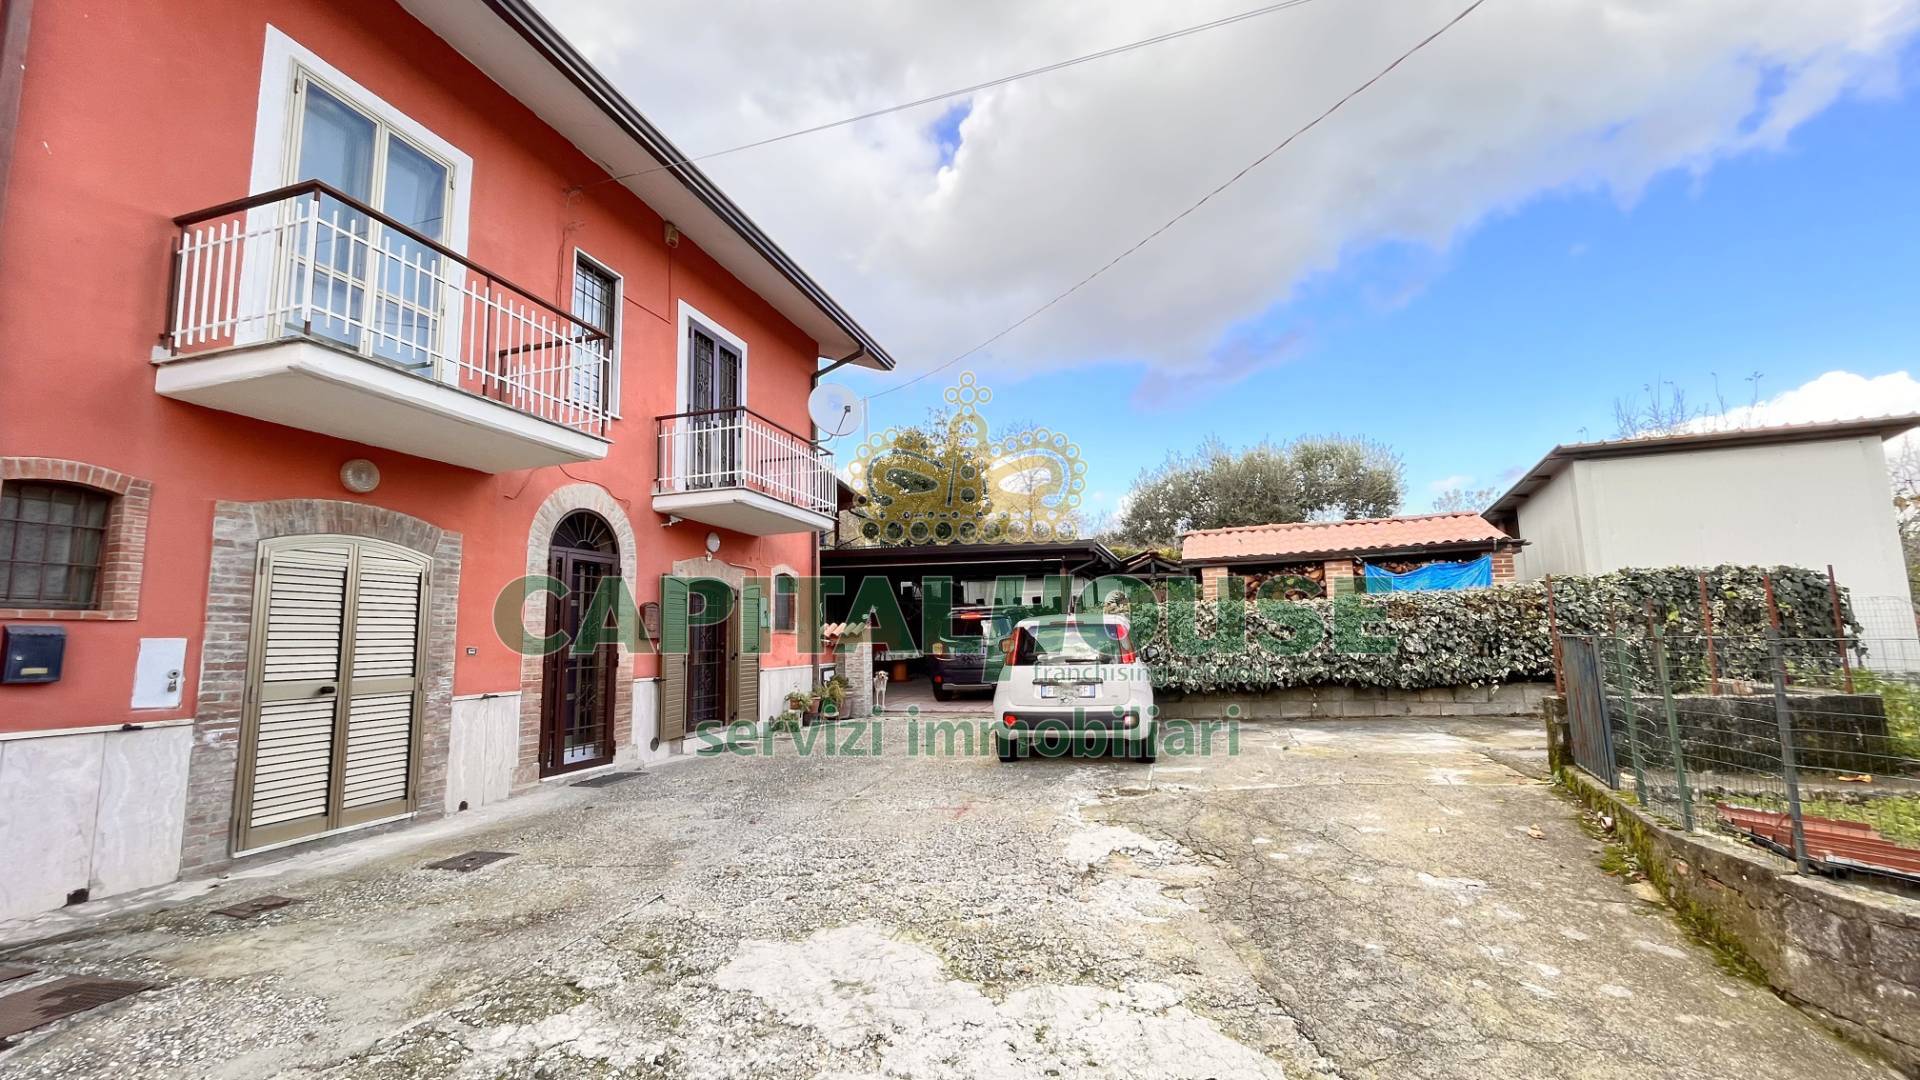 Casa semi-indipendente in vendita a Bellizzi Irpino, Avellino (AV)